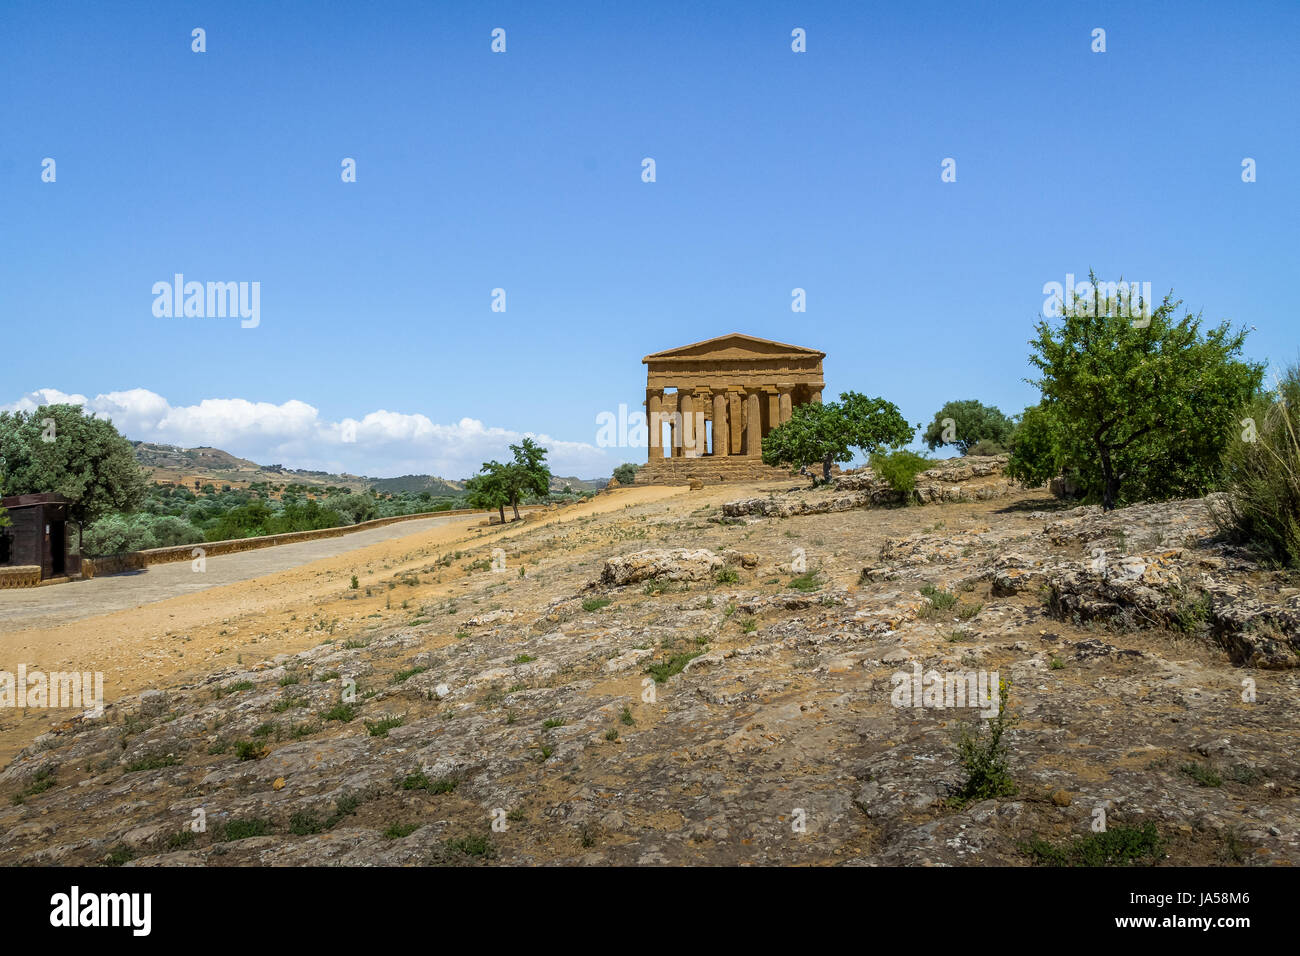 Templo de la concordia en el Valle de los templos, Agrigento, Sicilia, Italia Foto de stock